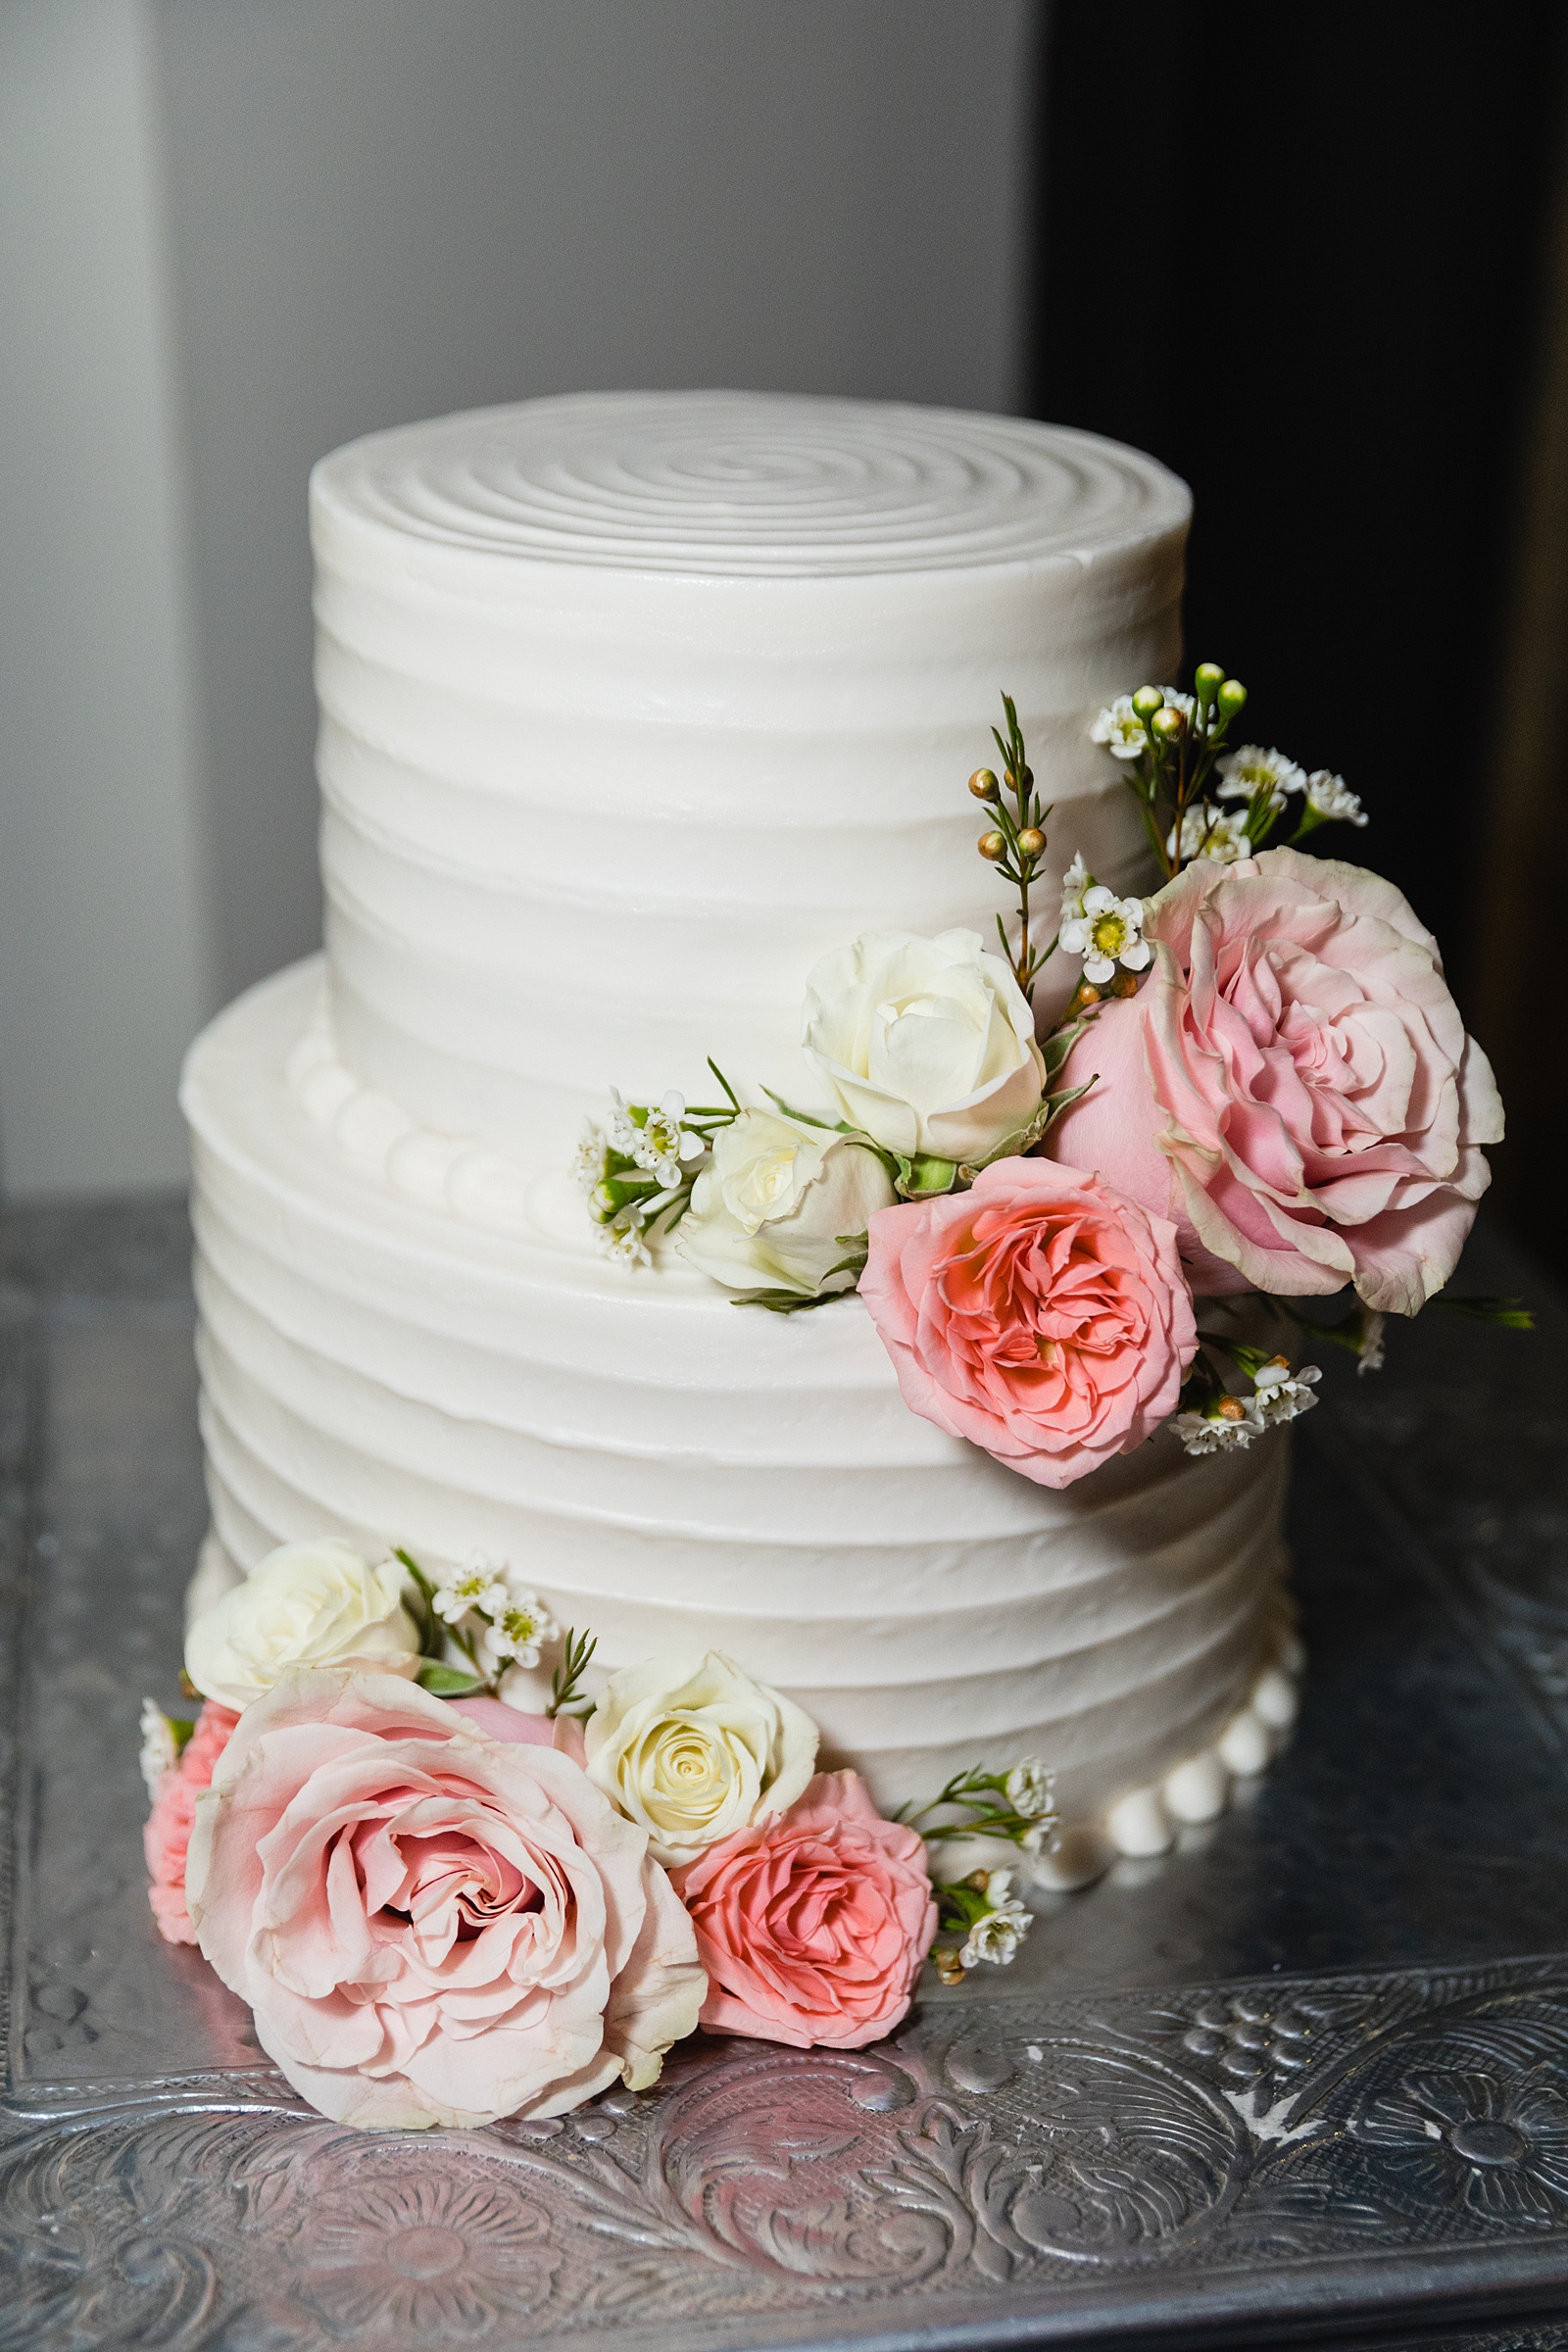 White simple wedding cake by Arizona wedding photographer PMA Photography.